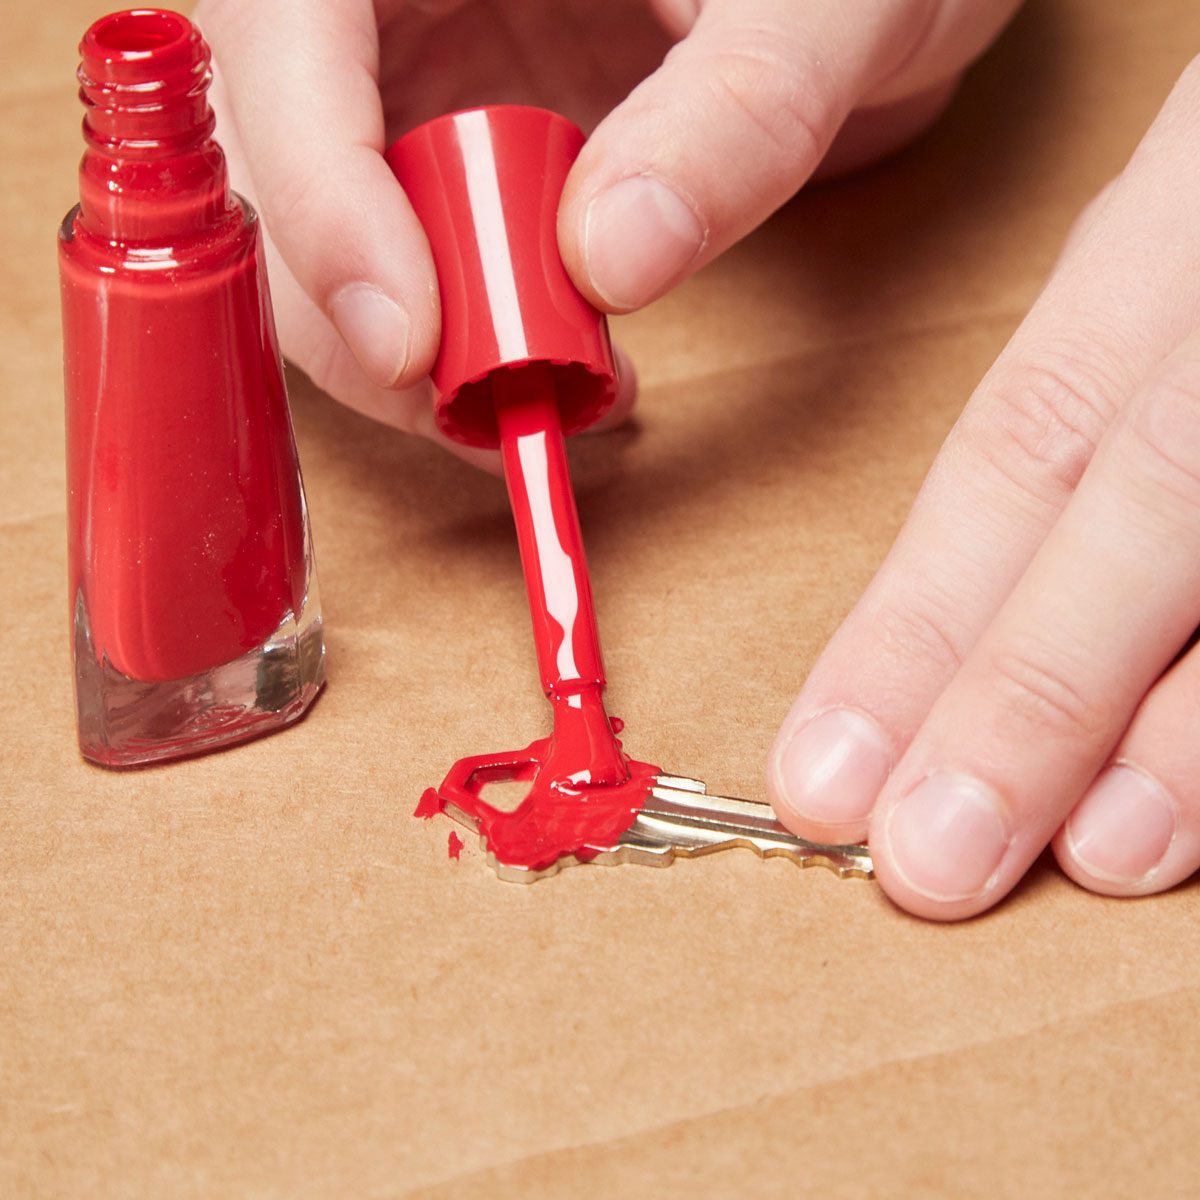 10 Great Uses For Nail Polish And Nail Polish Remover Family Handyman